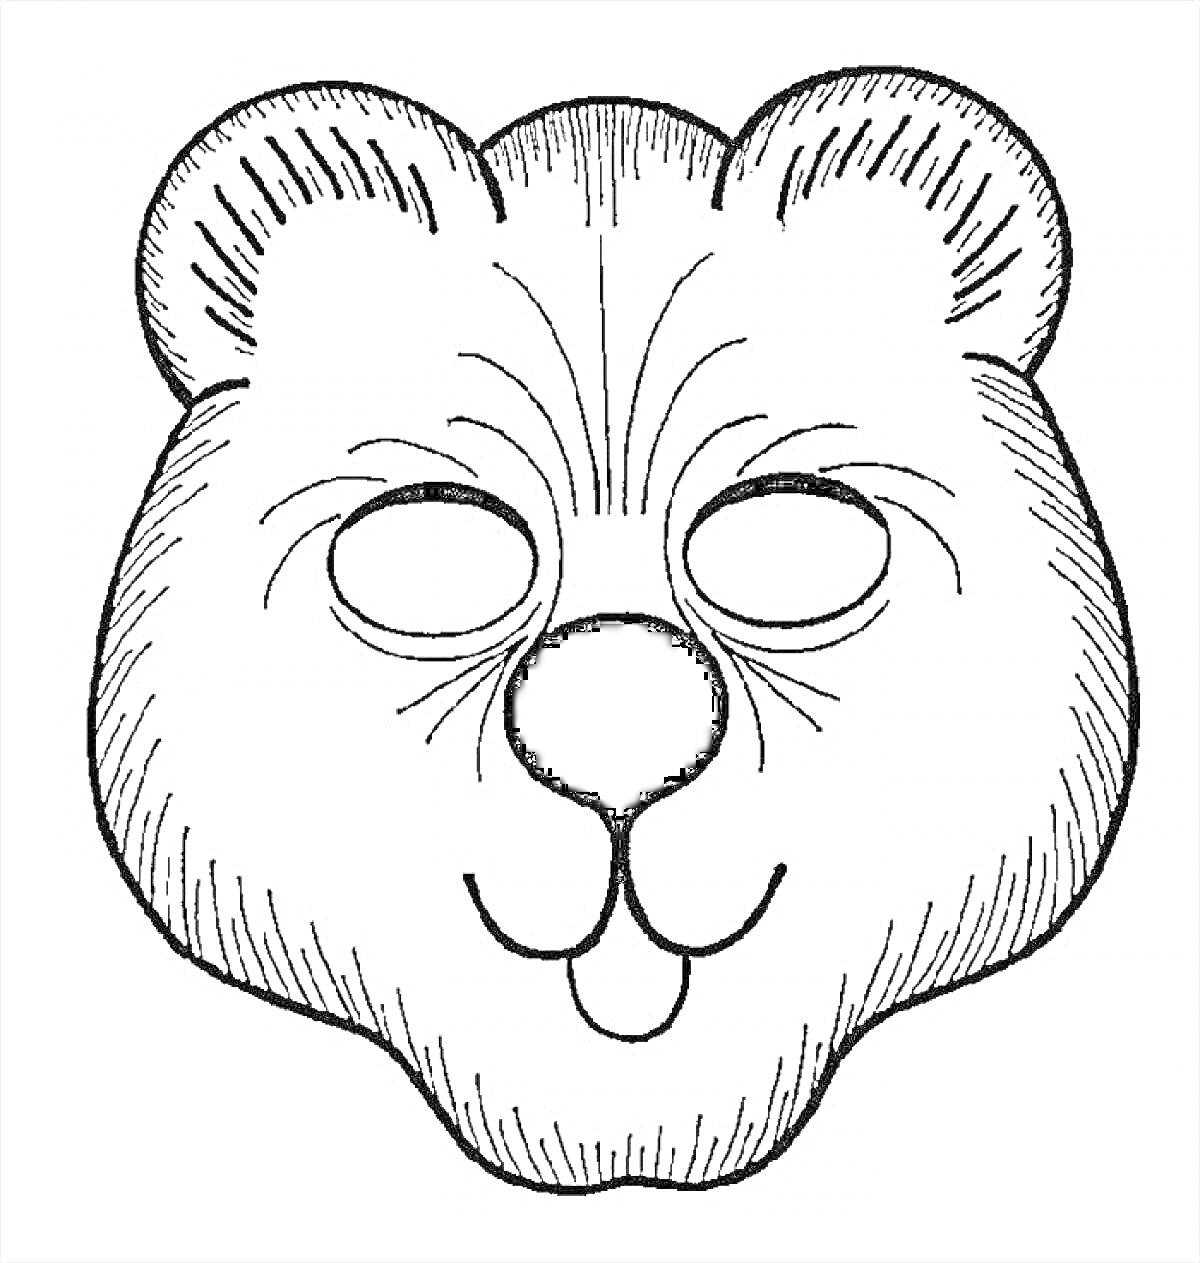 Новогодняя маска медведя с ушами, глазницами, носом и улыбкой